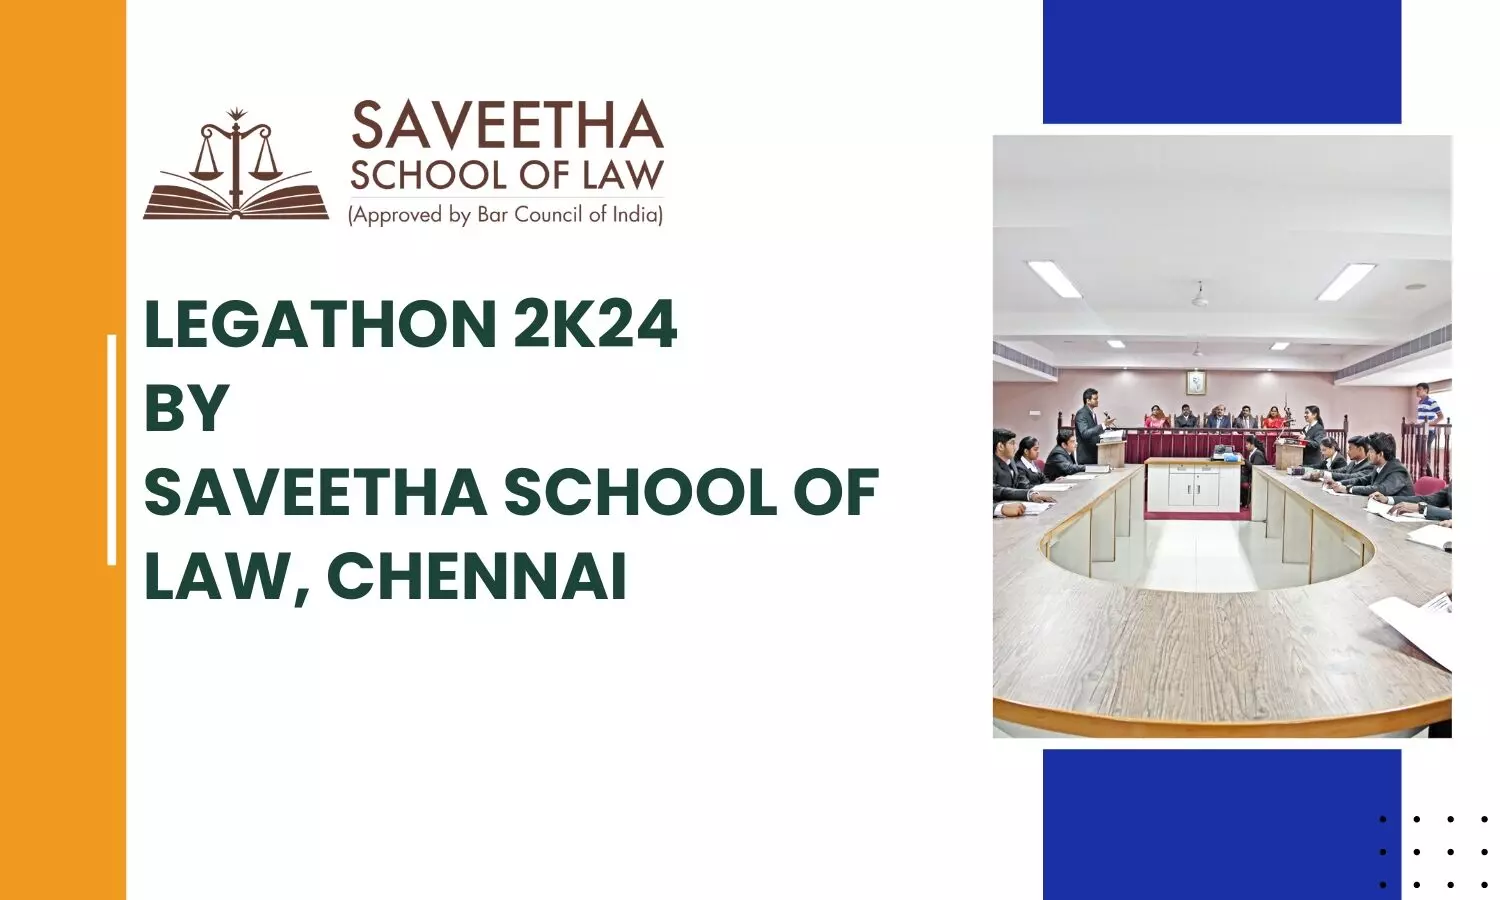 Legathon 2k24 by Saveetha School of Law, Chennai